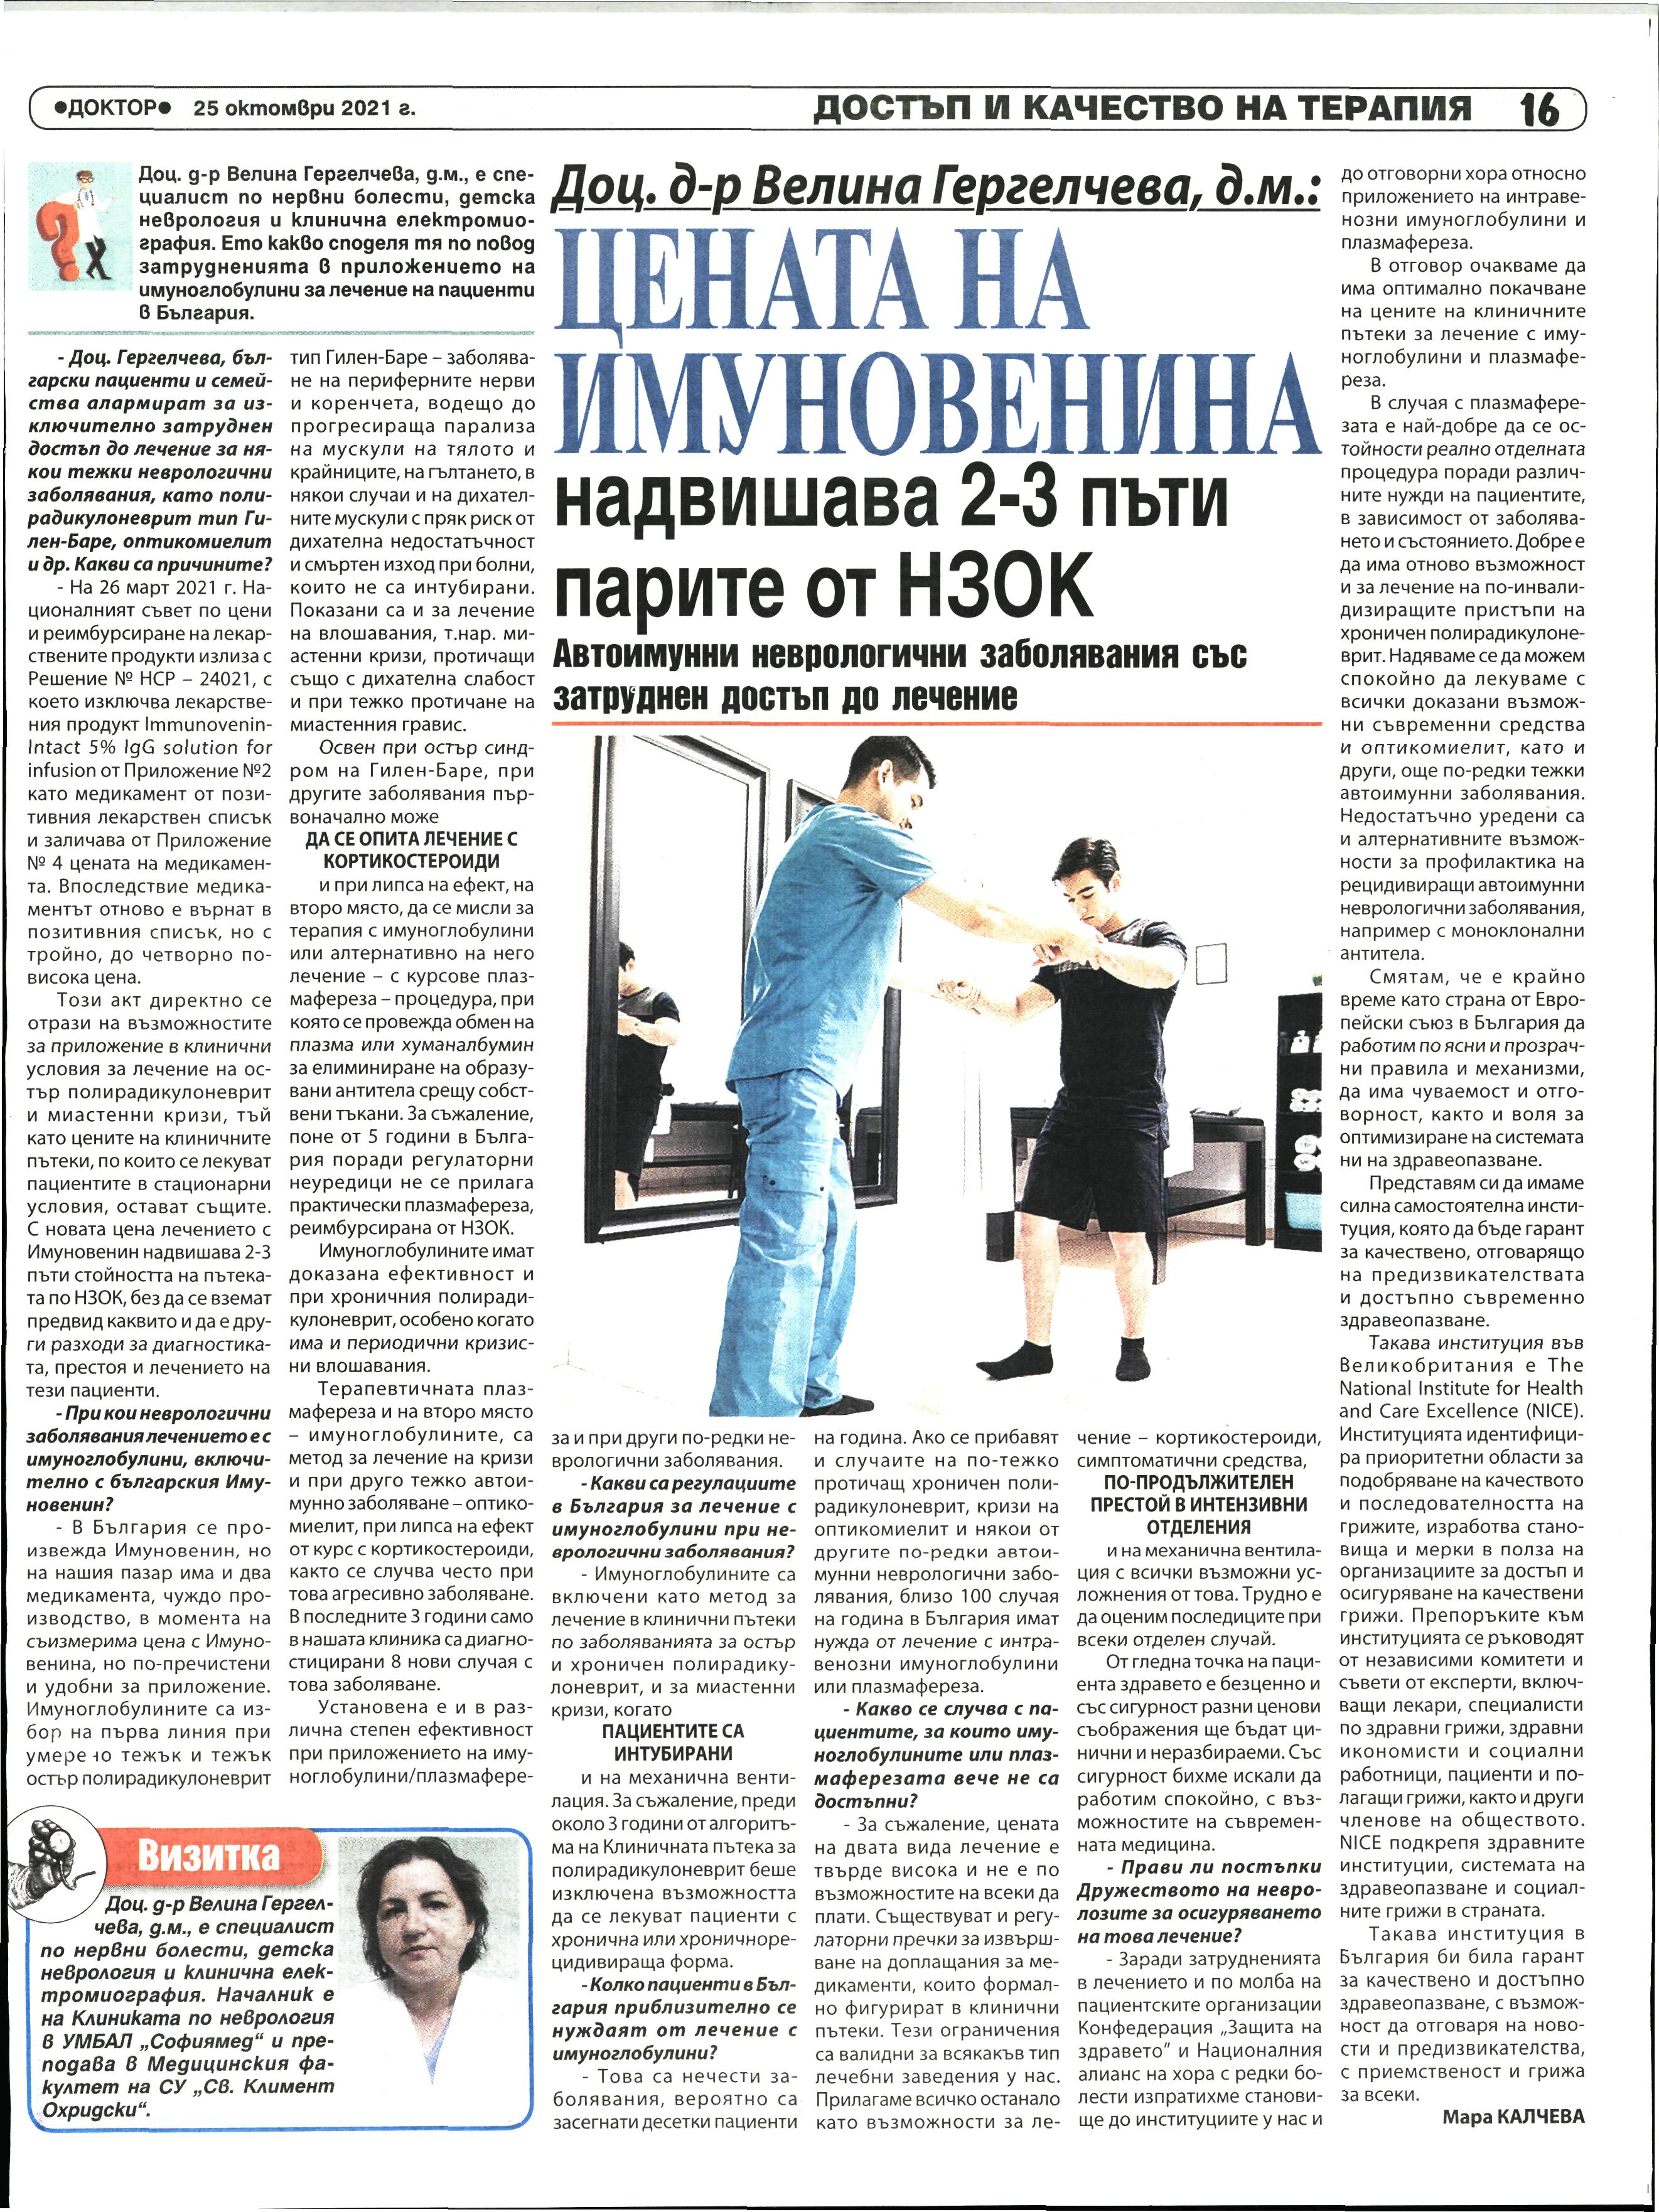 Цената на Имуновенина надвишава 2-3 пъти парите от НЗОК   